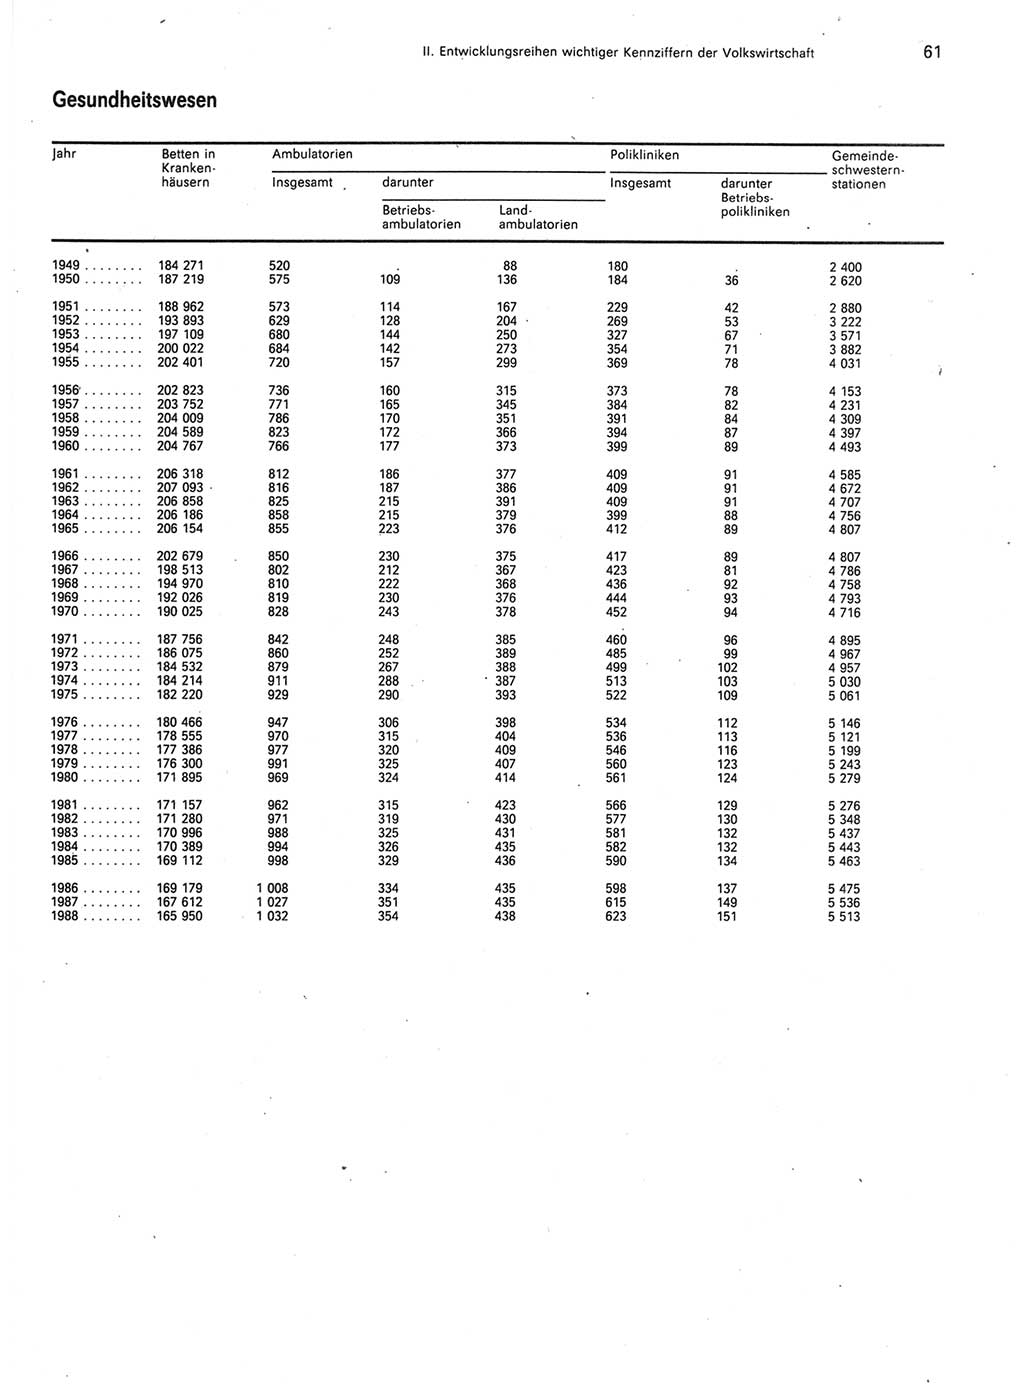 Statistisches Jahrbuch der Deutschen Demokratischen Republik (DDR) 1989, Seite 61 (Stat. Jb. DDR 1989, S. 61)